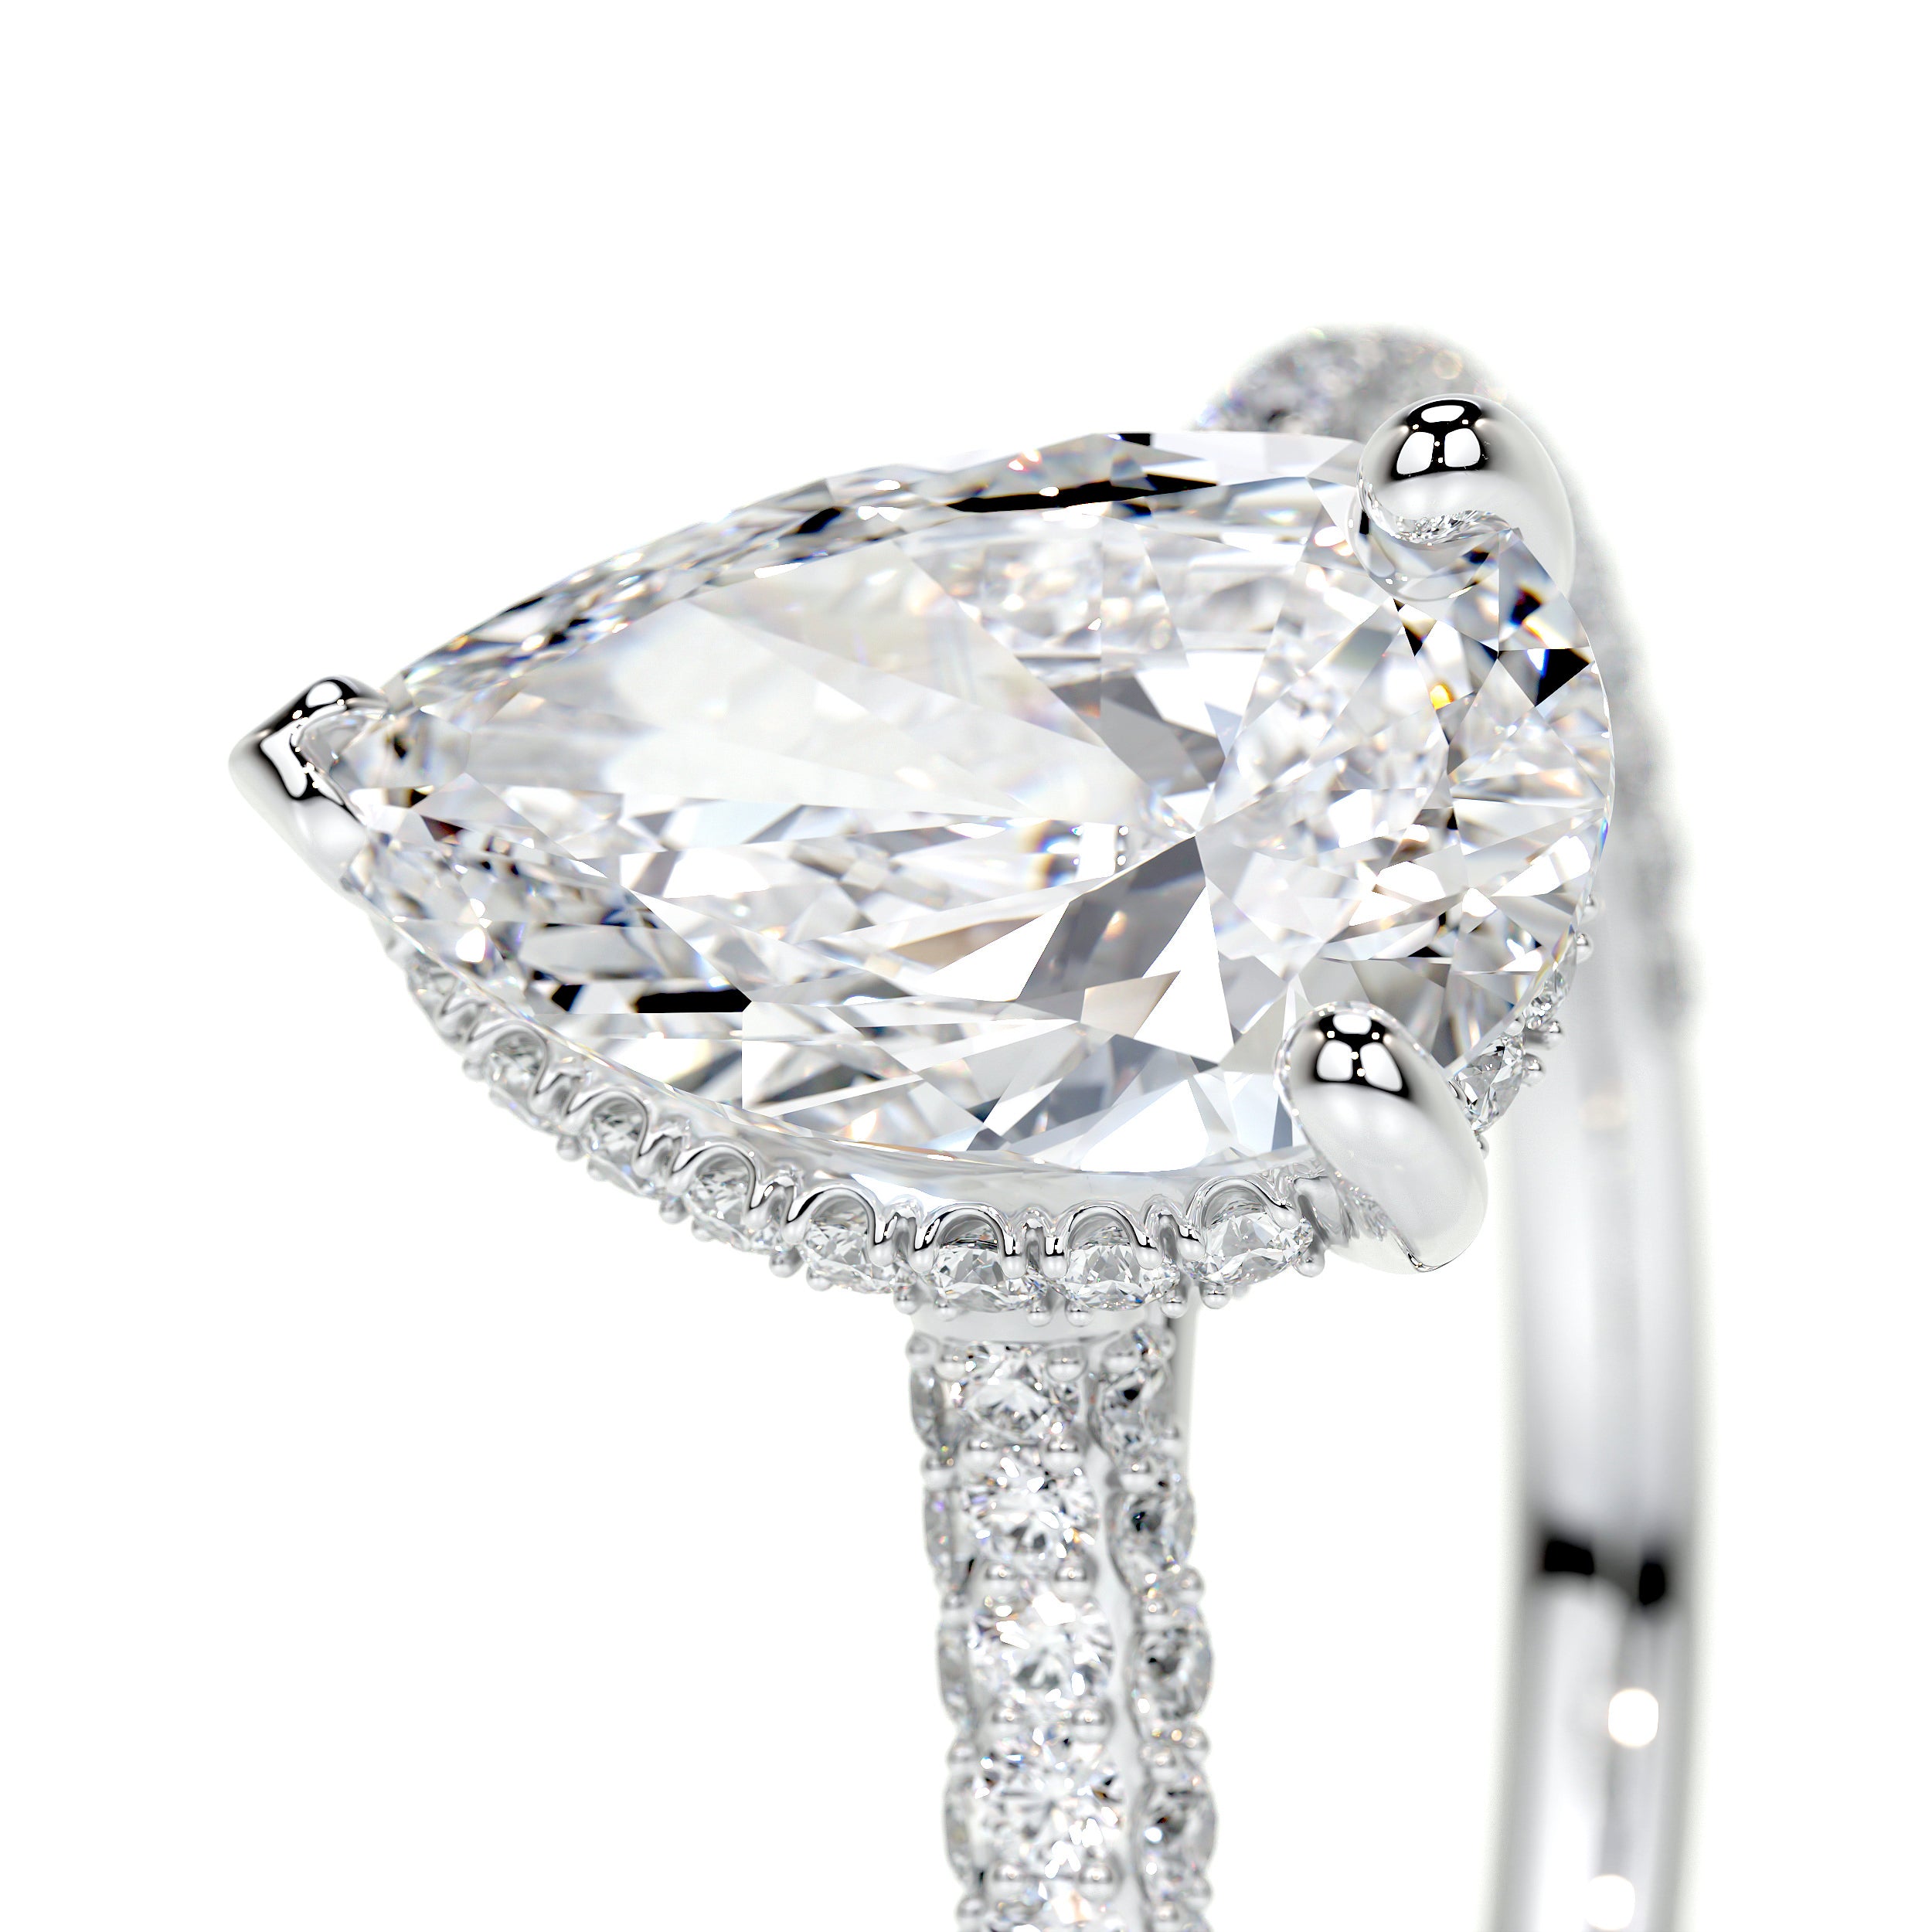 Nakia Lab Grown Diamond Ring -18K White Gold